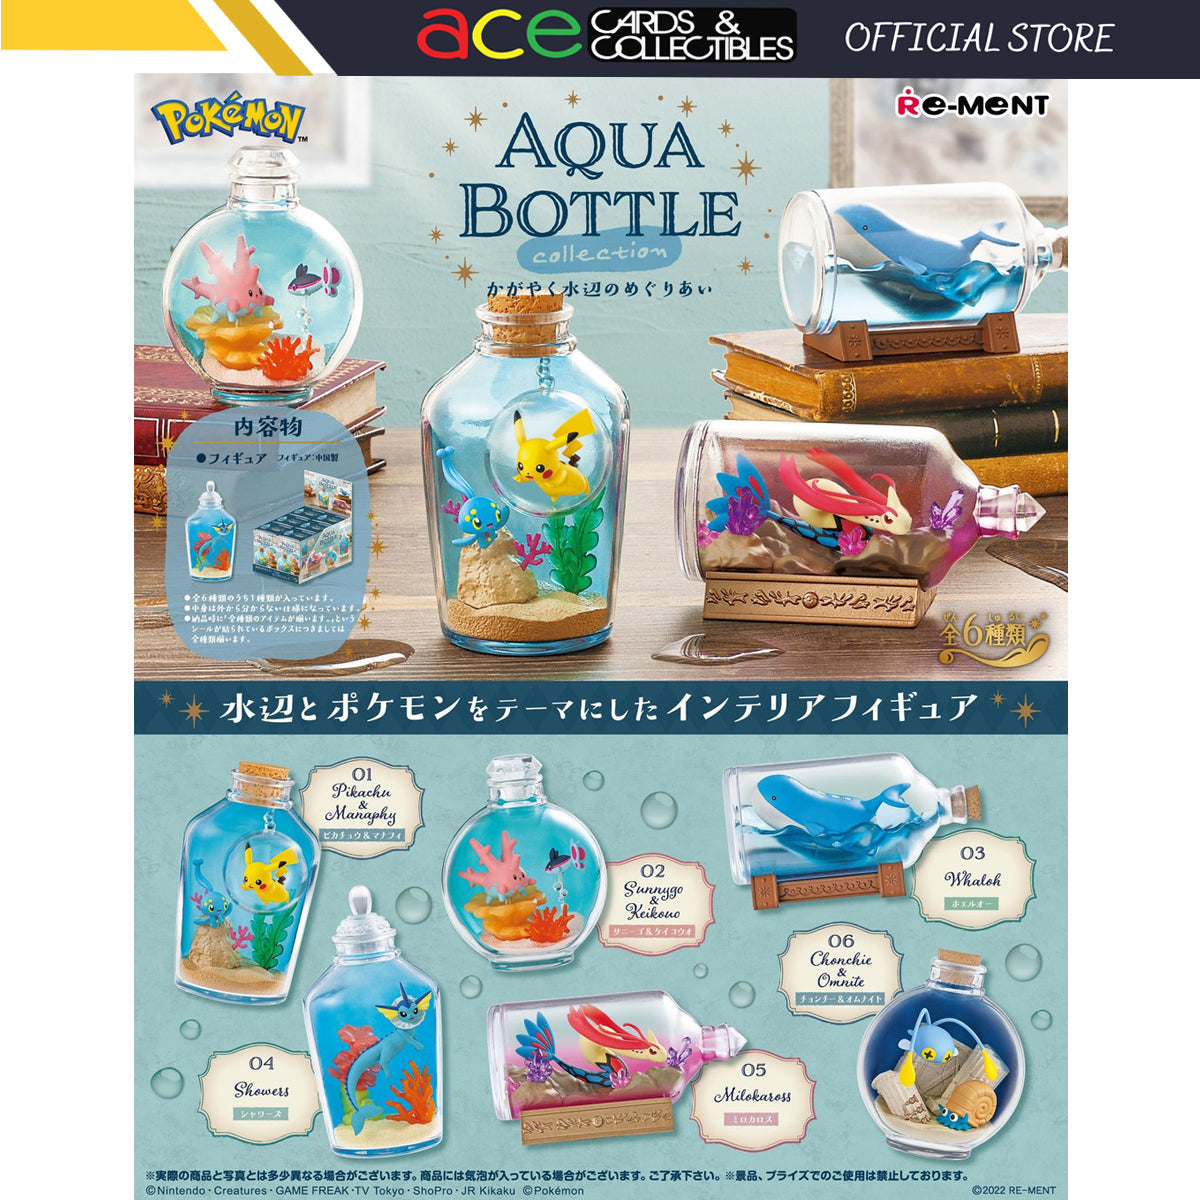 Re-Ment Pokemon Aqua Bottle-Single Box (Random)-Re-Ment-Ace Cards & Collectibles